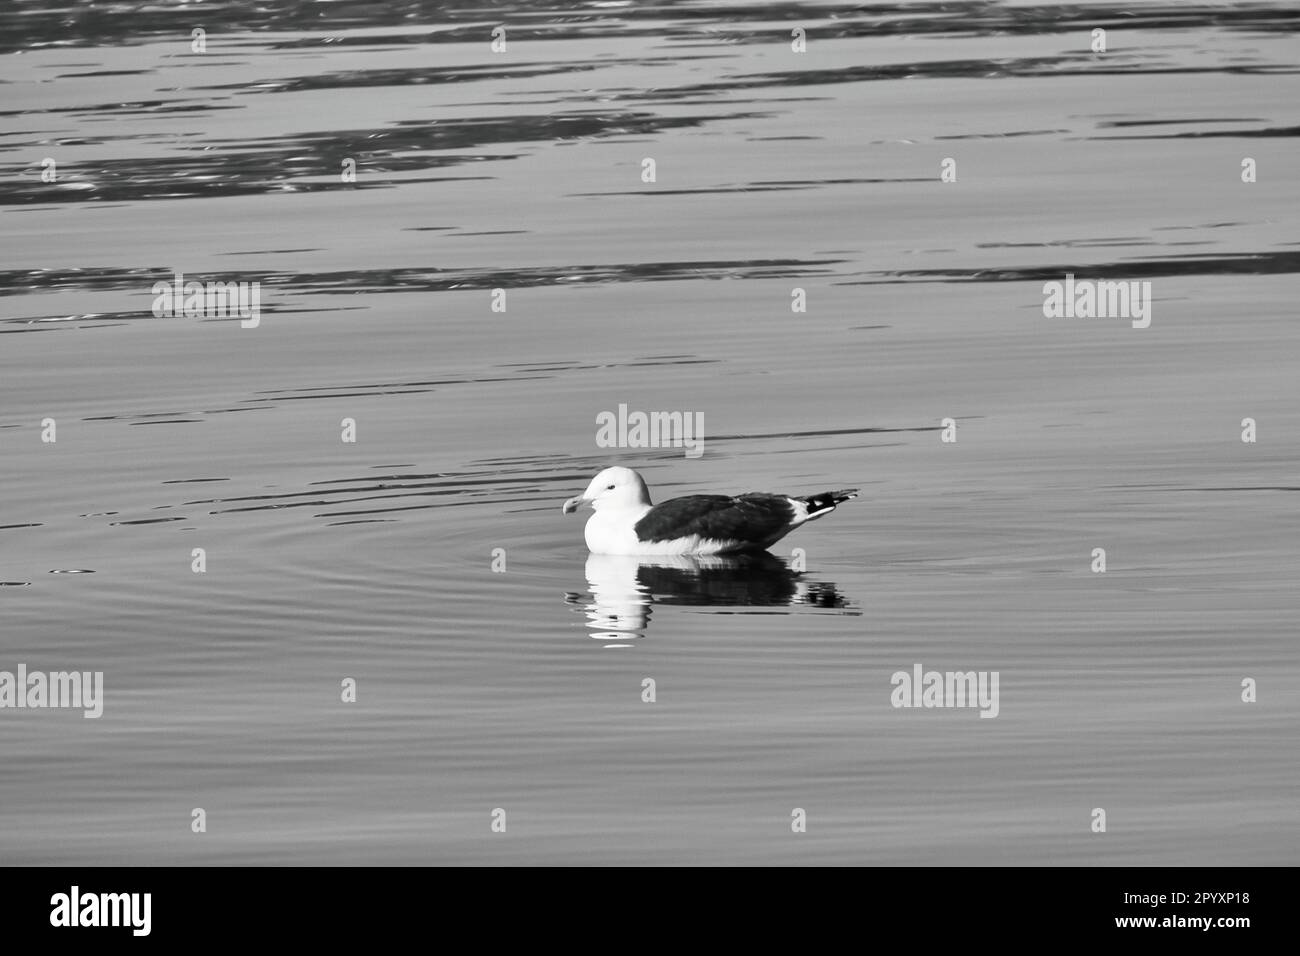 gabbiano nuotando sul fiordo in Norvegia in acque calme in bianco e nero. L'uccello marino si riflette nell'acqua. Foto di animali dalla Scandinavia Foto Stock